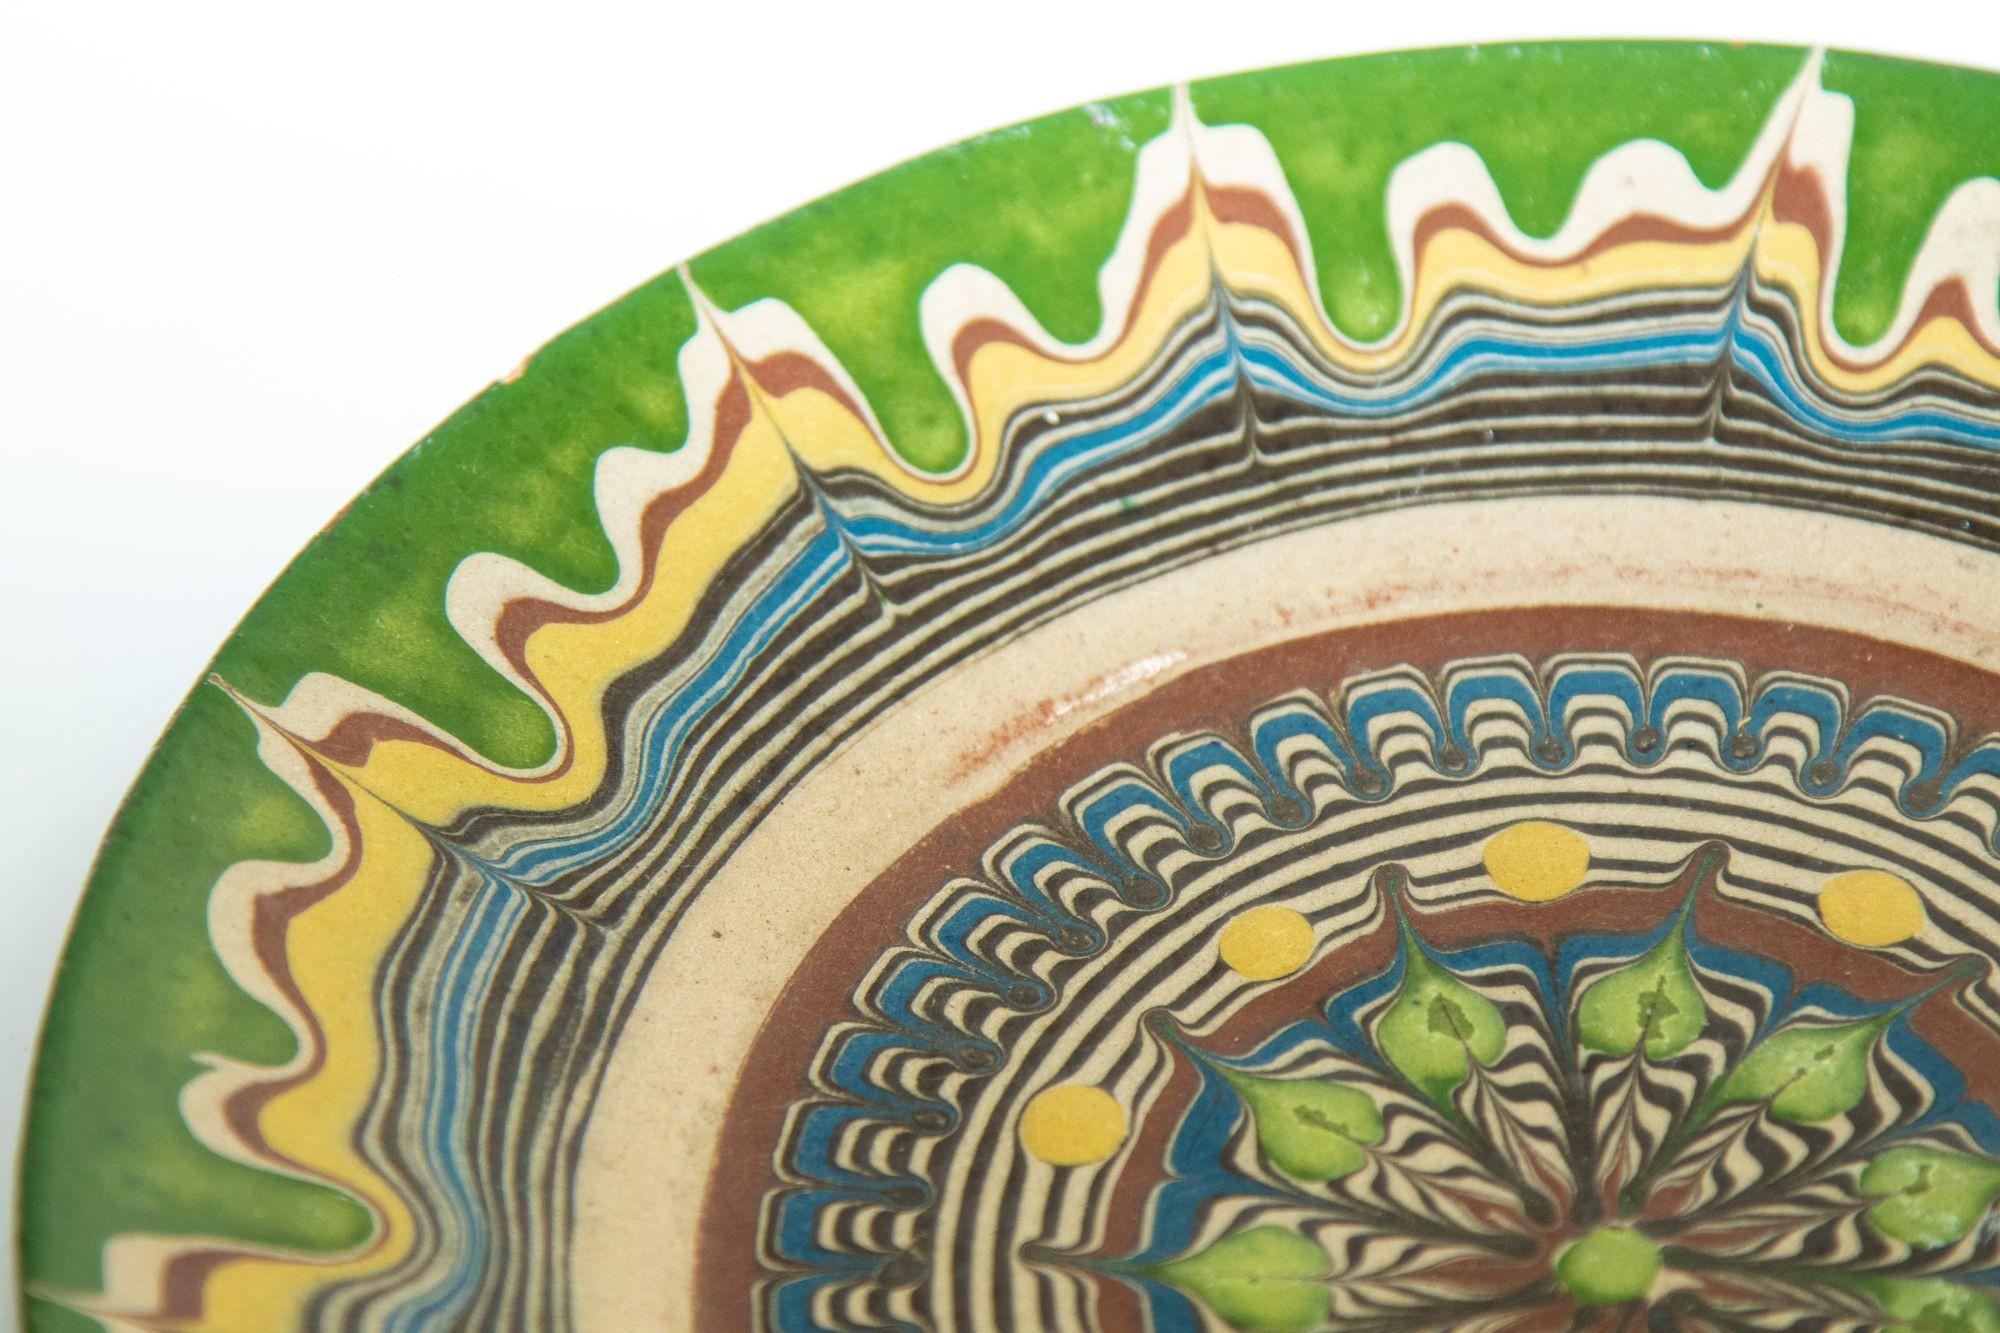 Assiette décorative vintage en terre cuite peinte à la main par Ceramika en Roumanie.
Motif marbré très détaillé dans des tons de vert, rouille, jaune, ivoire et brun foncé.
Vintage Handmade ceramica de Horezu pottery plate, Romanian Folk Art,